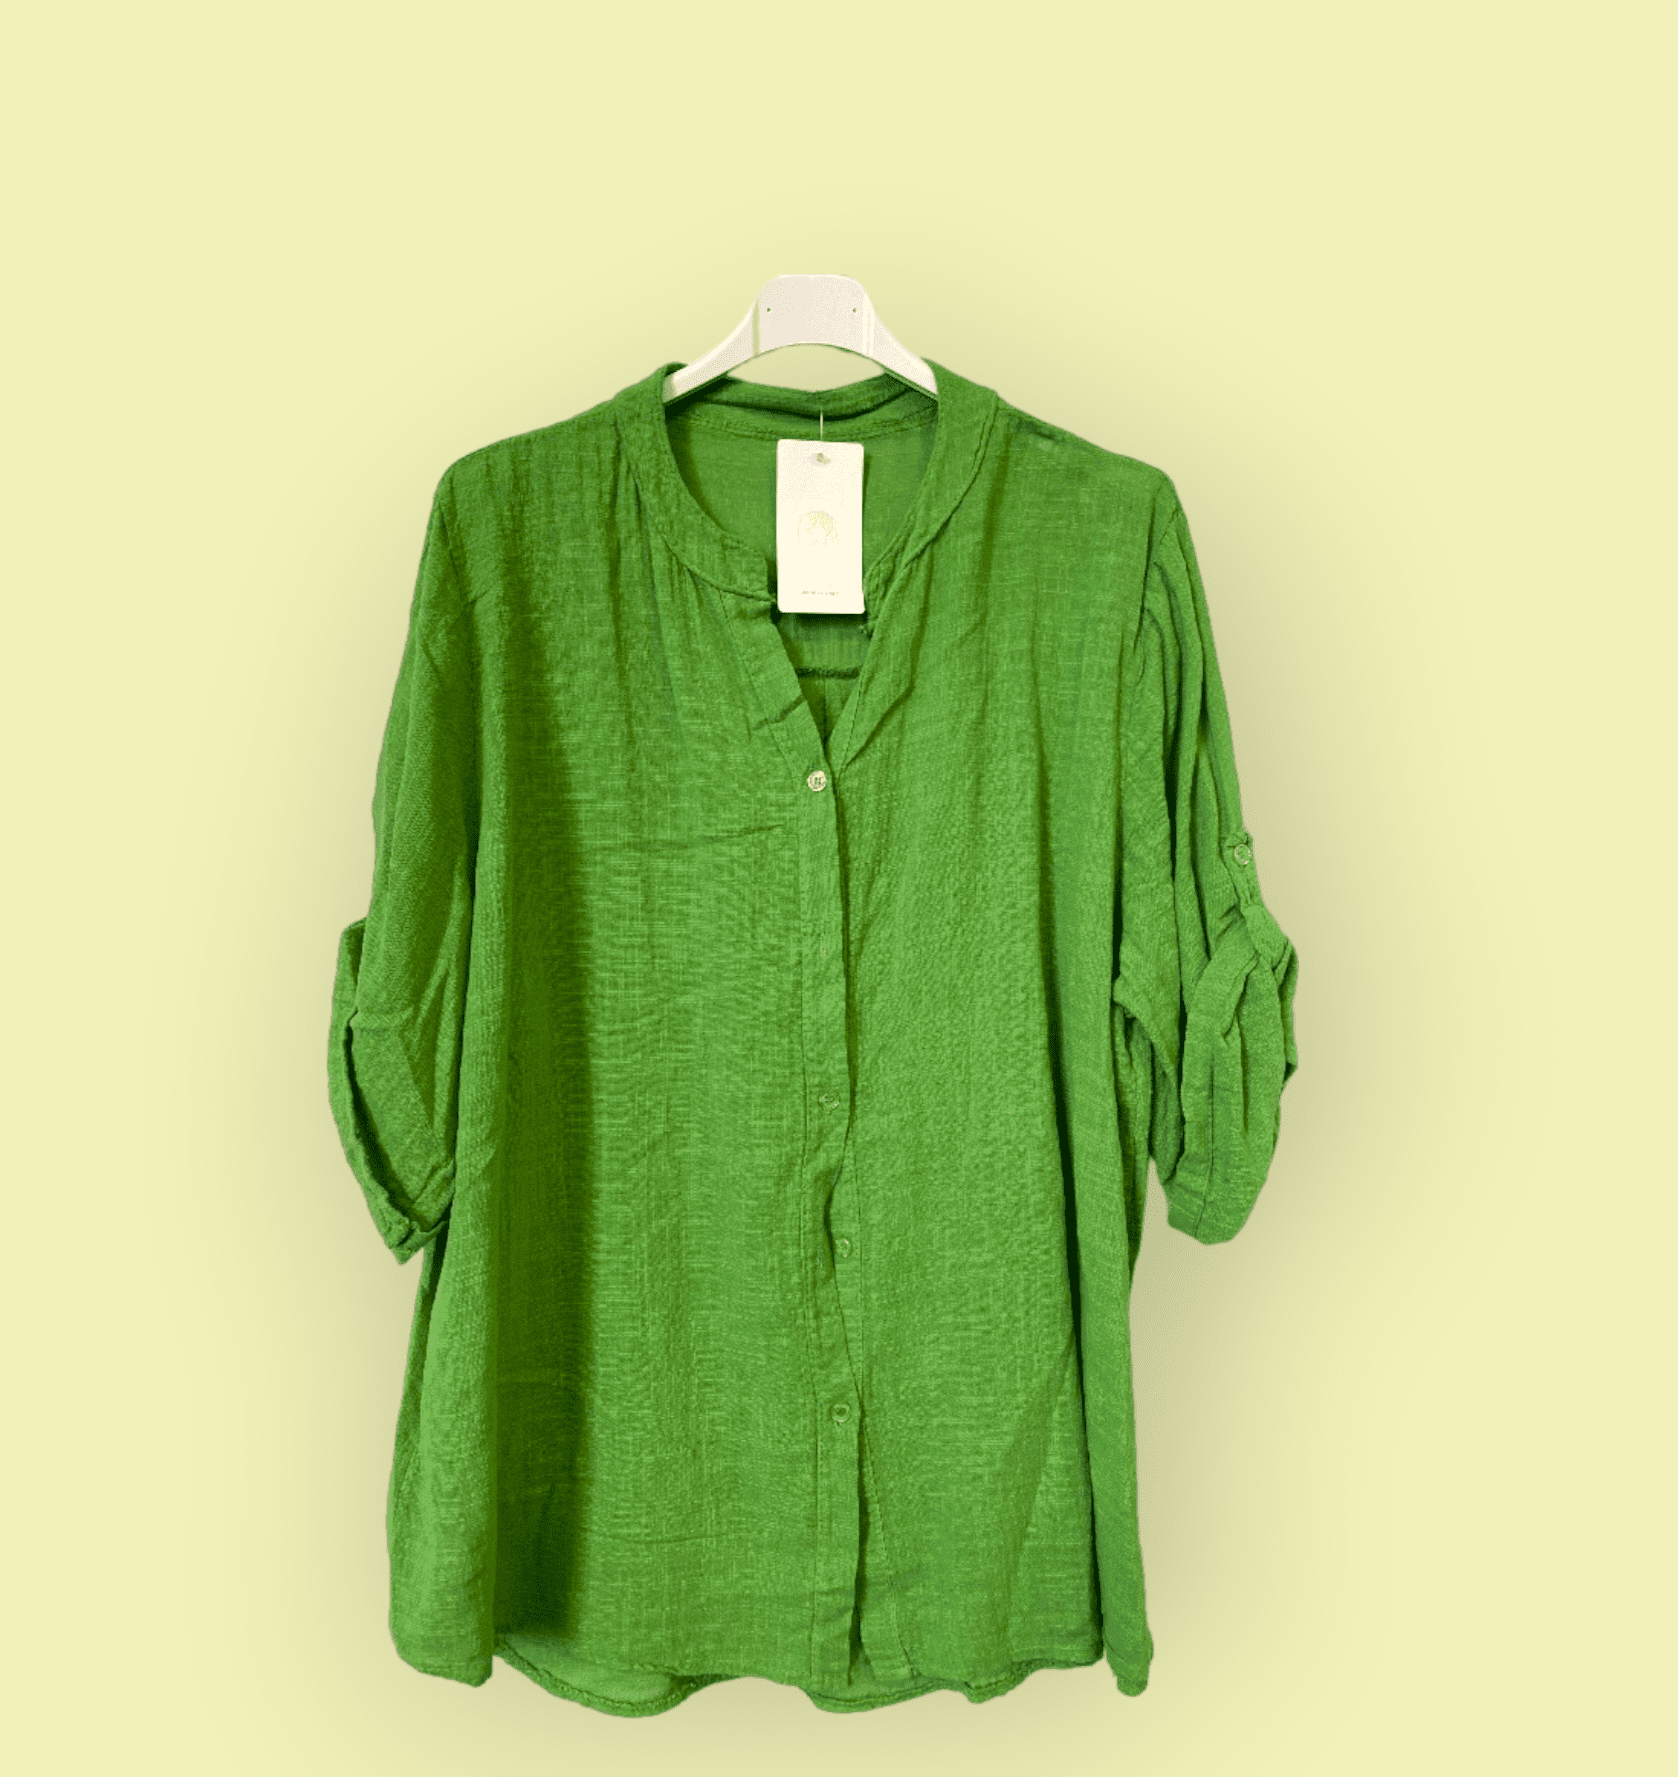 Linnen blouse top met verstelbare mouwen en knopjes GRAS GROEN kleur maat 42-46